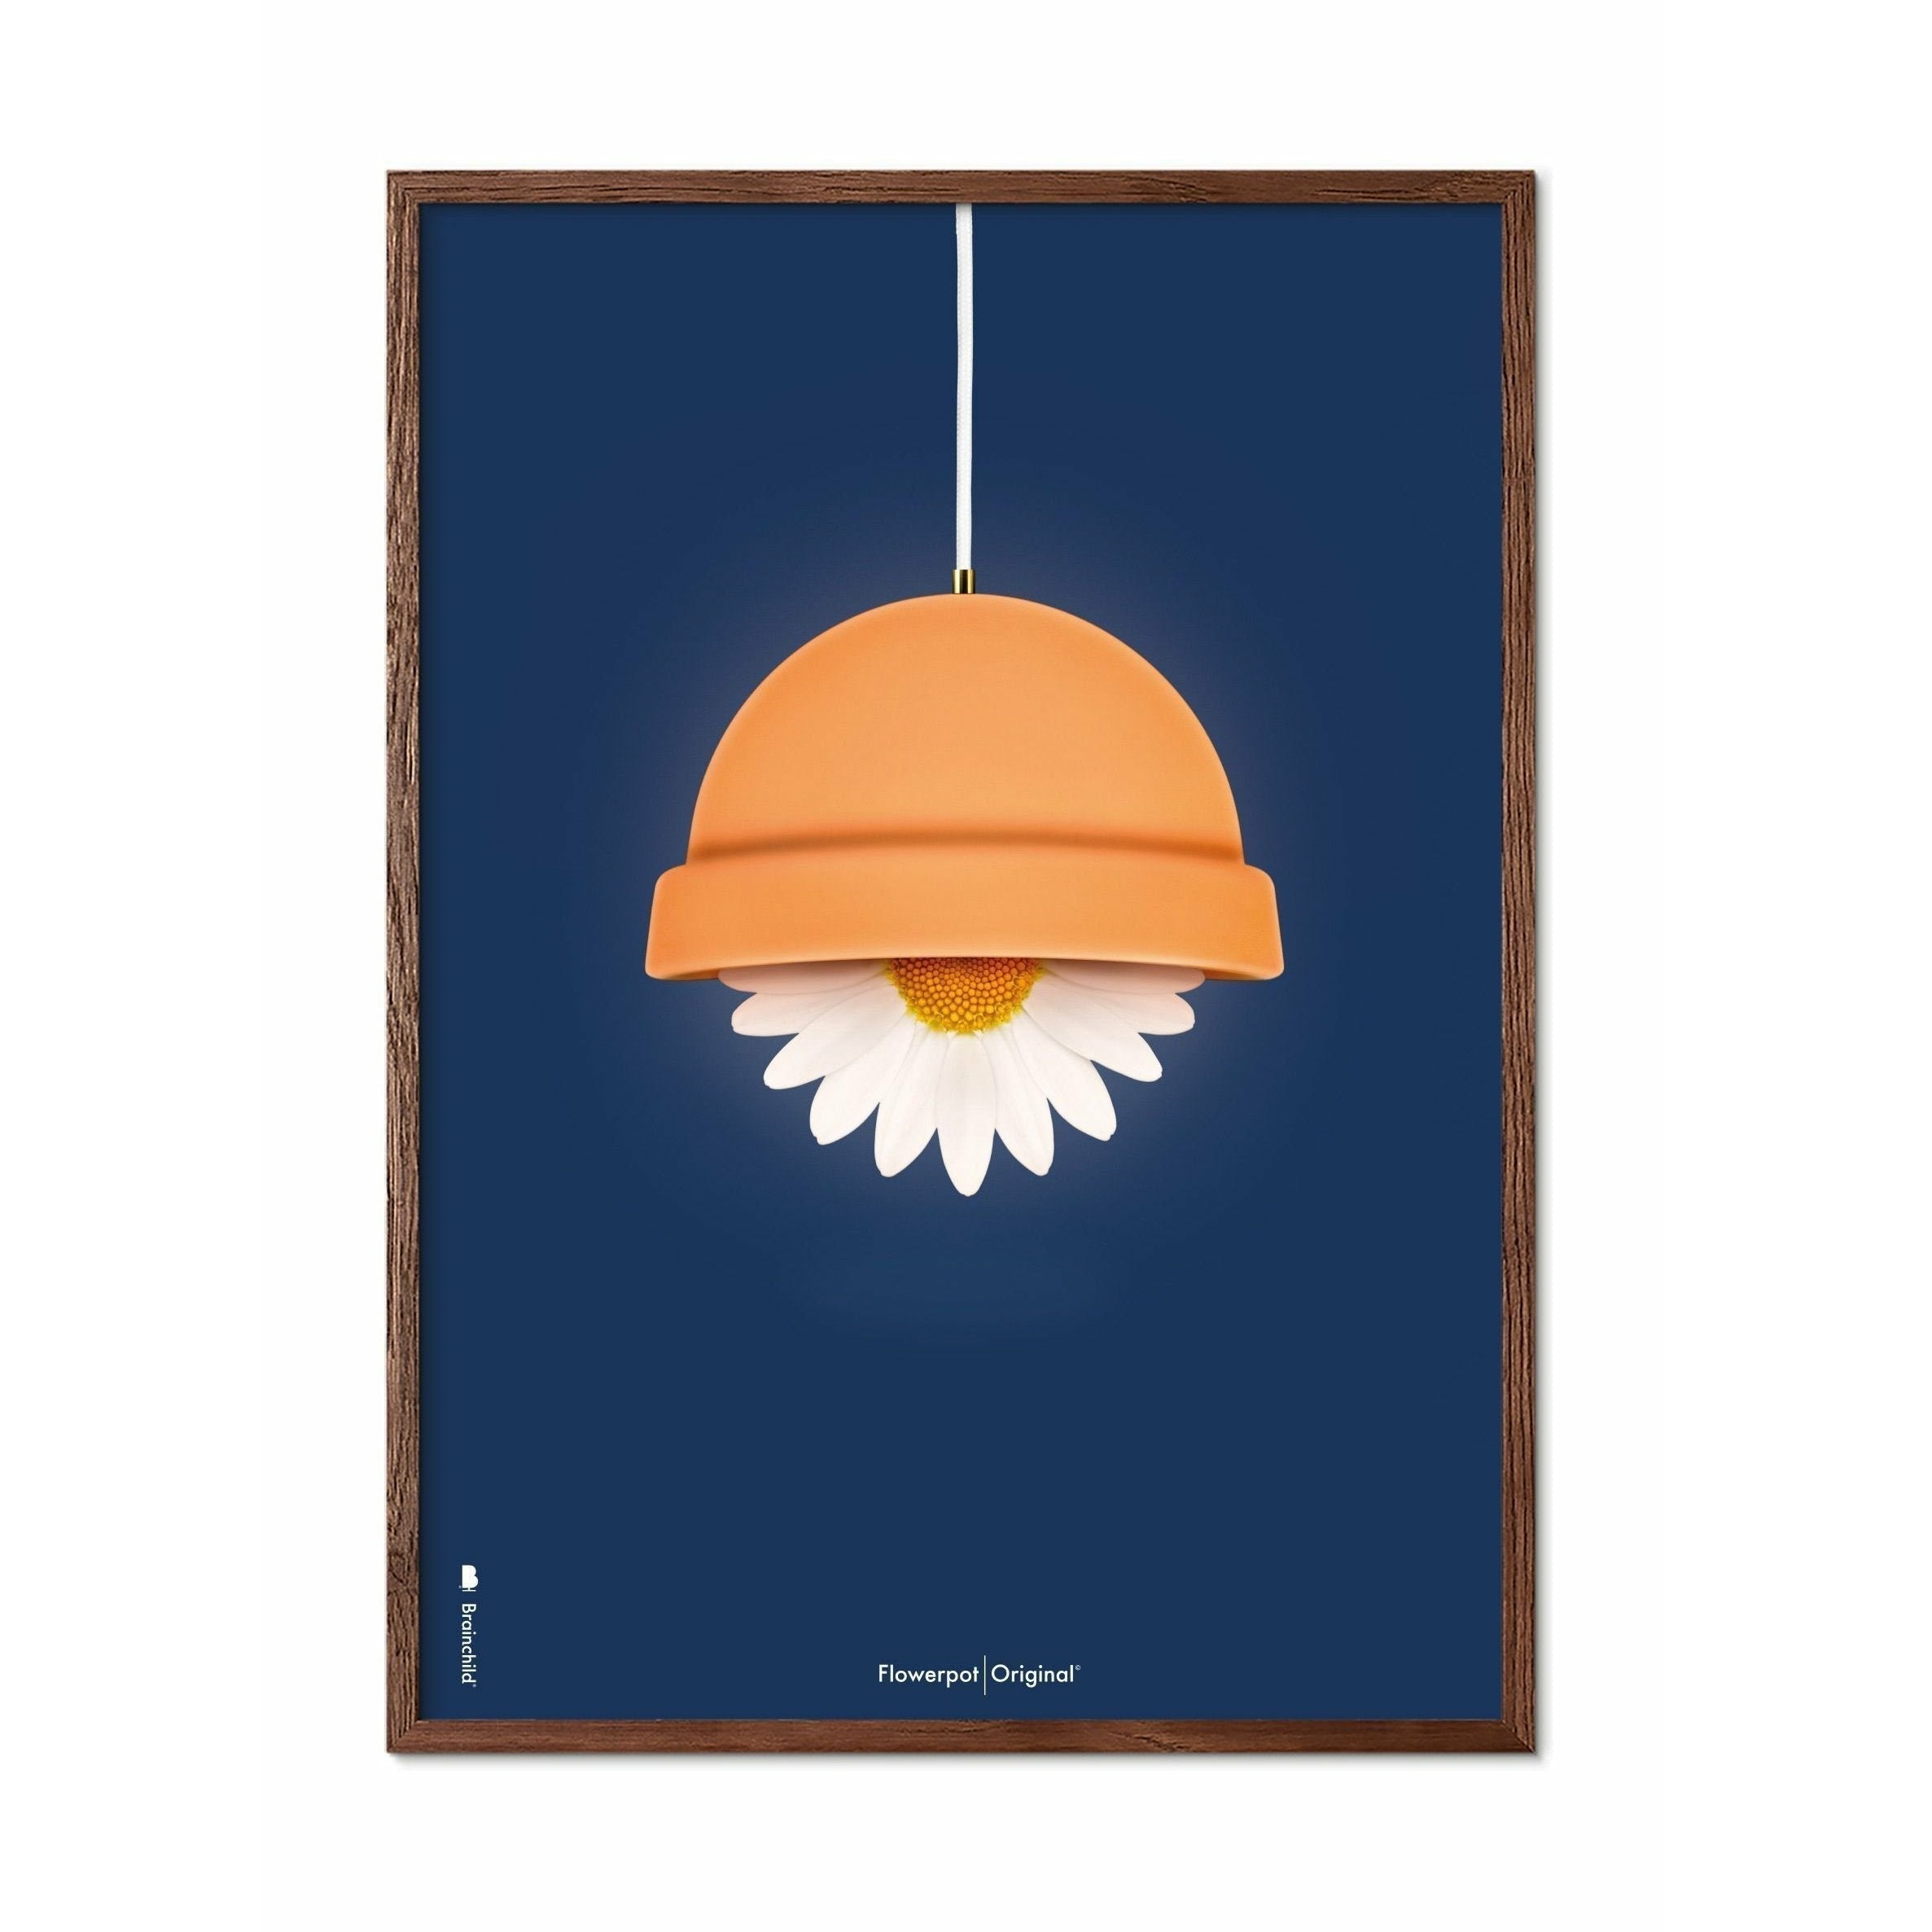 Brainchild Blumentopf Classic Poster, dunkler Holzrahmen A5, dunkelblauer Hintergrund